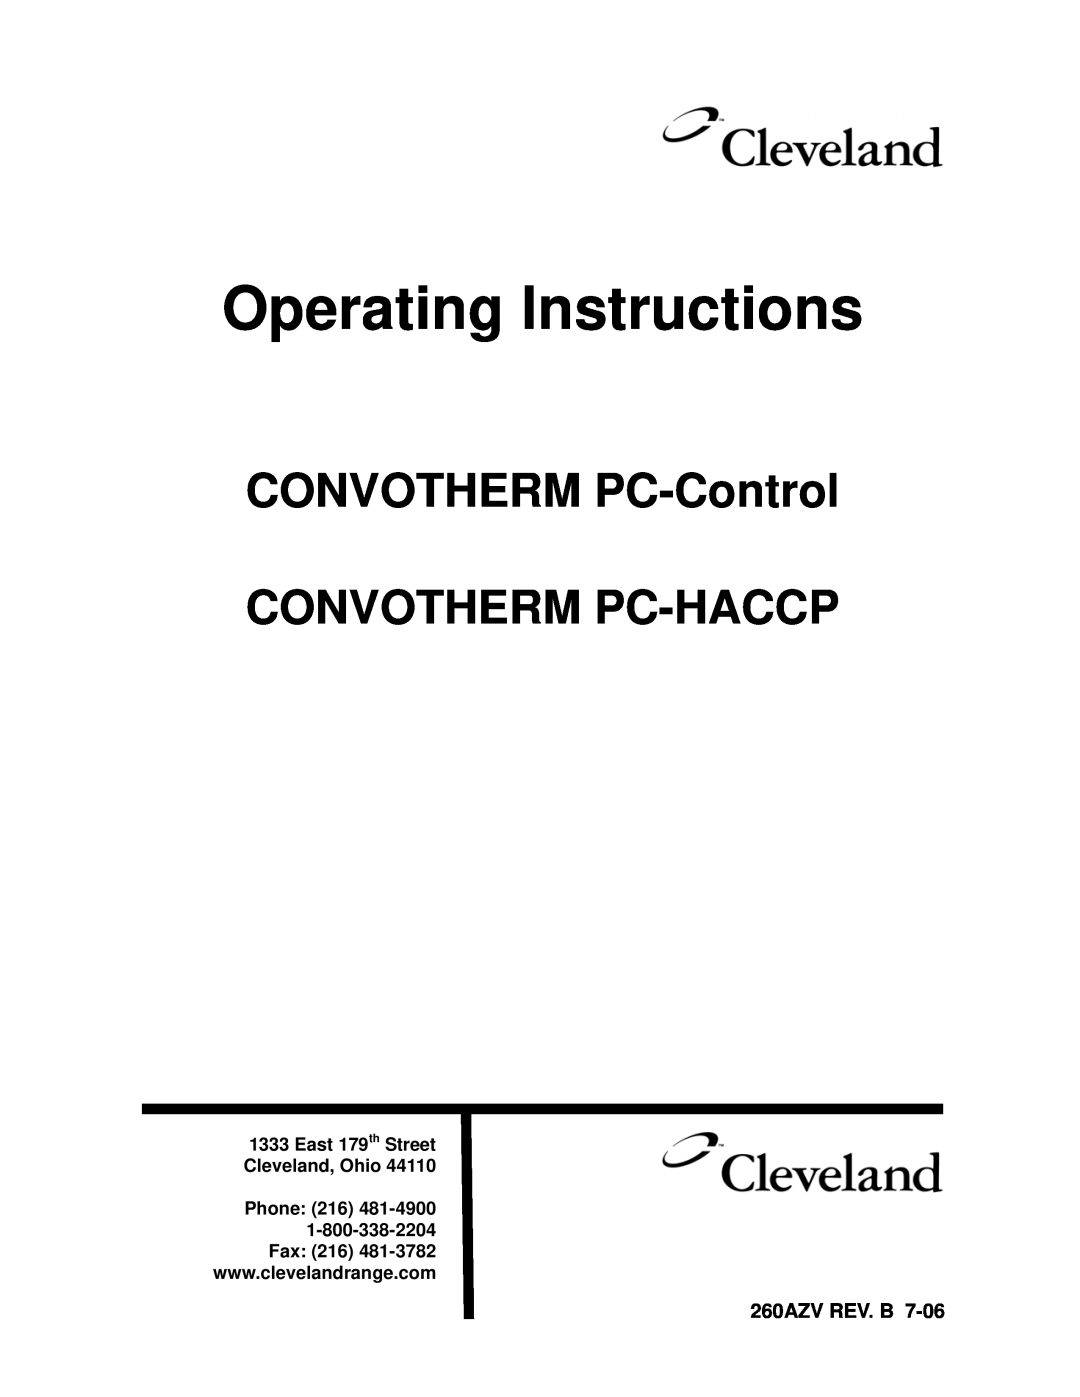 Cleveland Range PC-HACCP operating instructions 260AZV REV. B, Operating Instructions, East 179th Street Cleveland, Ohio 